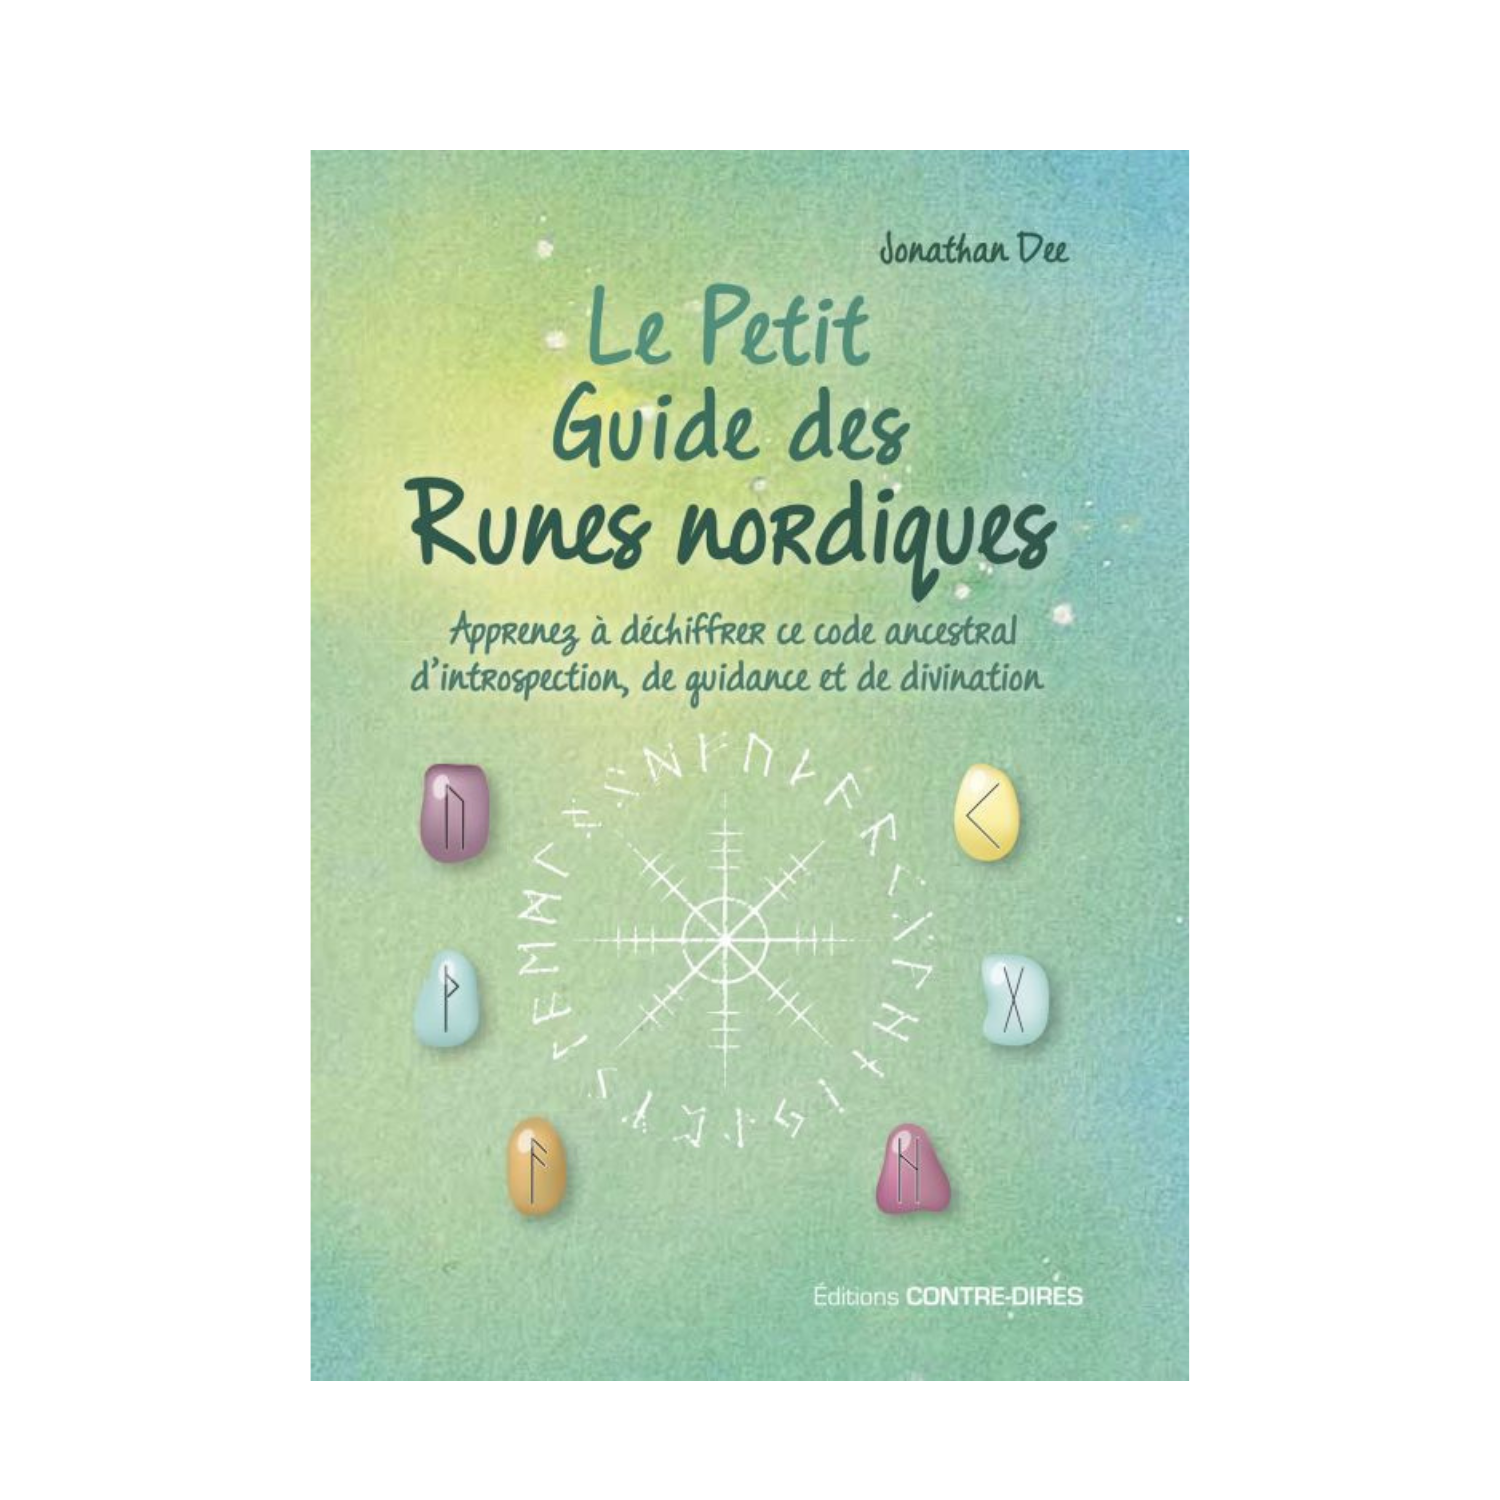 Le Petit Guide des Runes nordiques